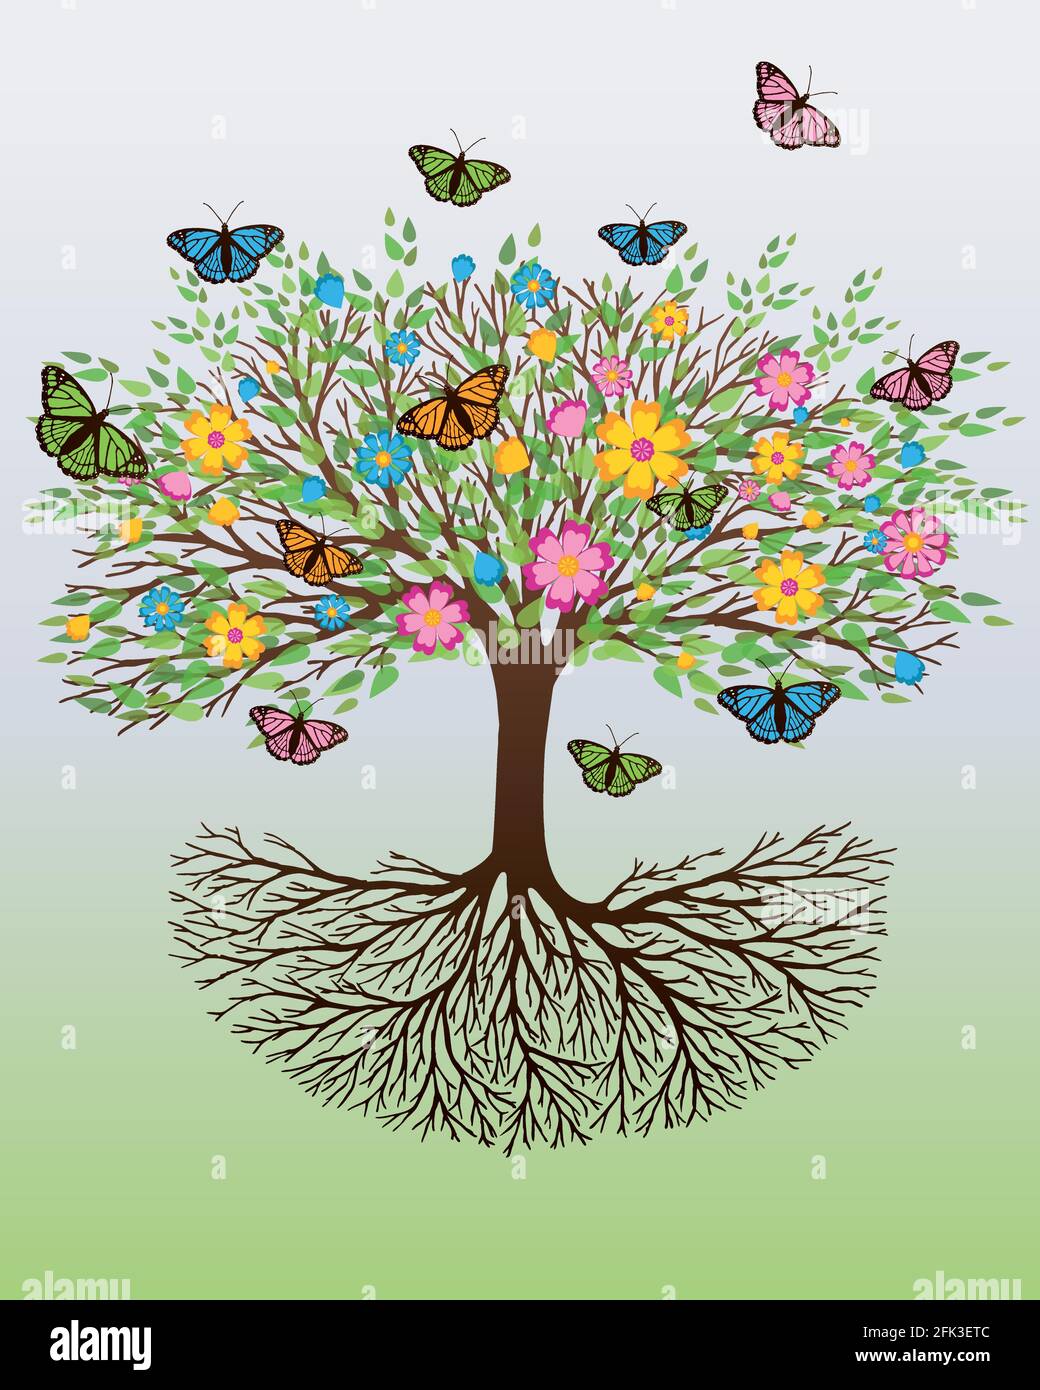 Un albero di vita con fiori e farfalle colorate seduti sui rami e volando intorno all'albero. Lo sfondo è un gradiente bianco verde Illustrazione Vettoriale